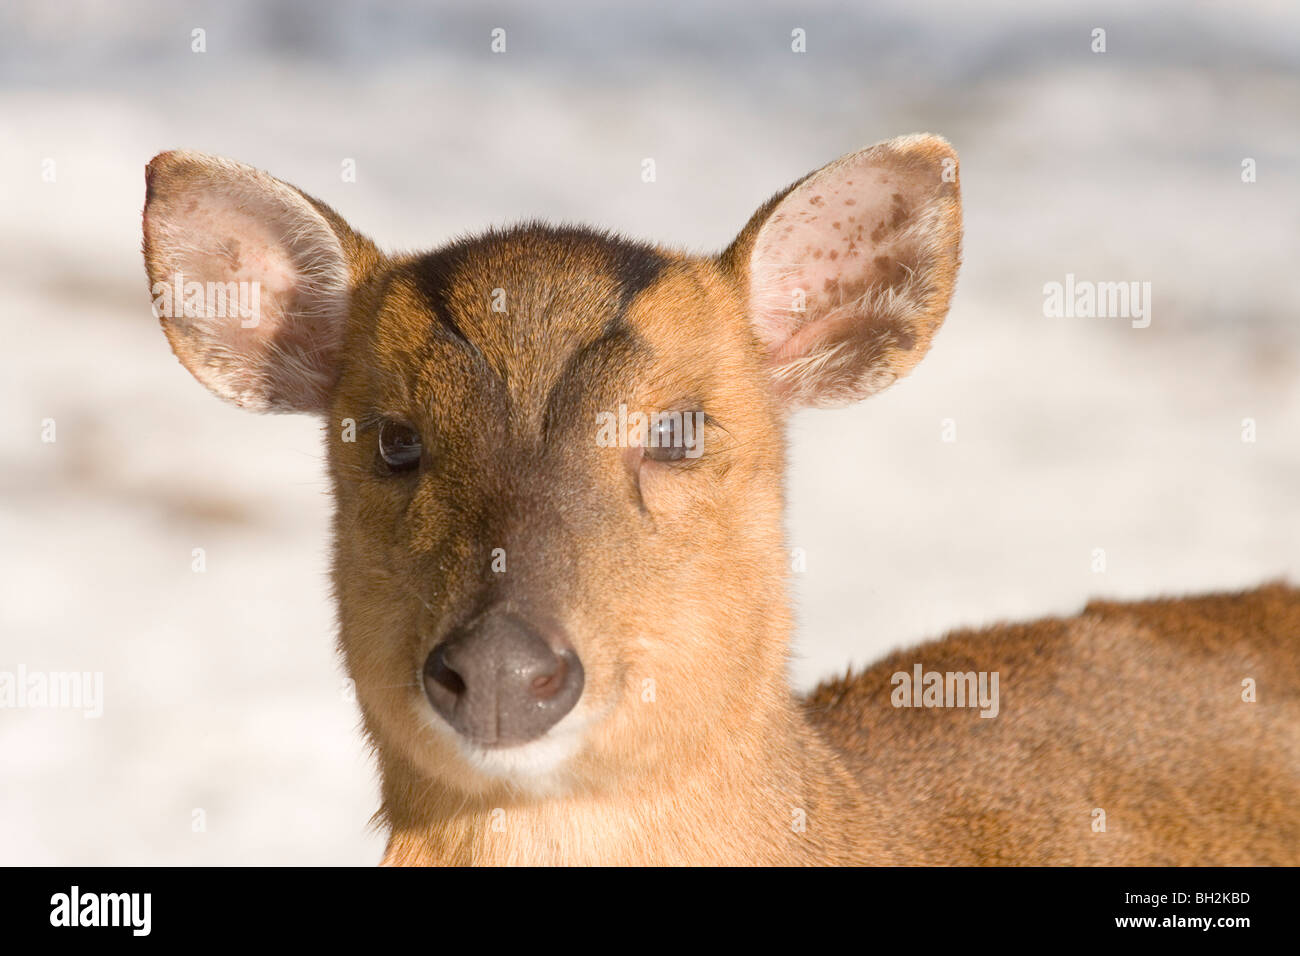 Muntjac Deer (Muntiacus reevesi). Female or doe. Winter snow background. Stock Photo